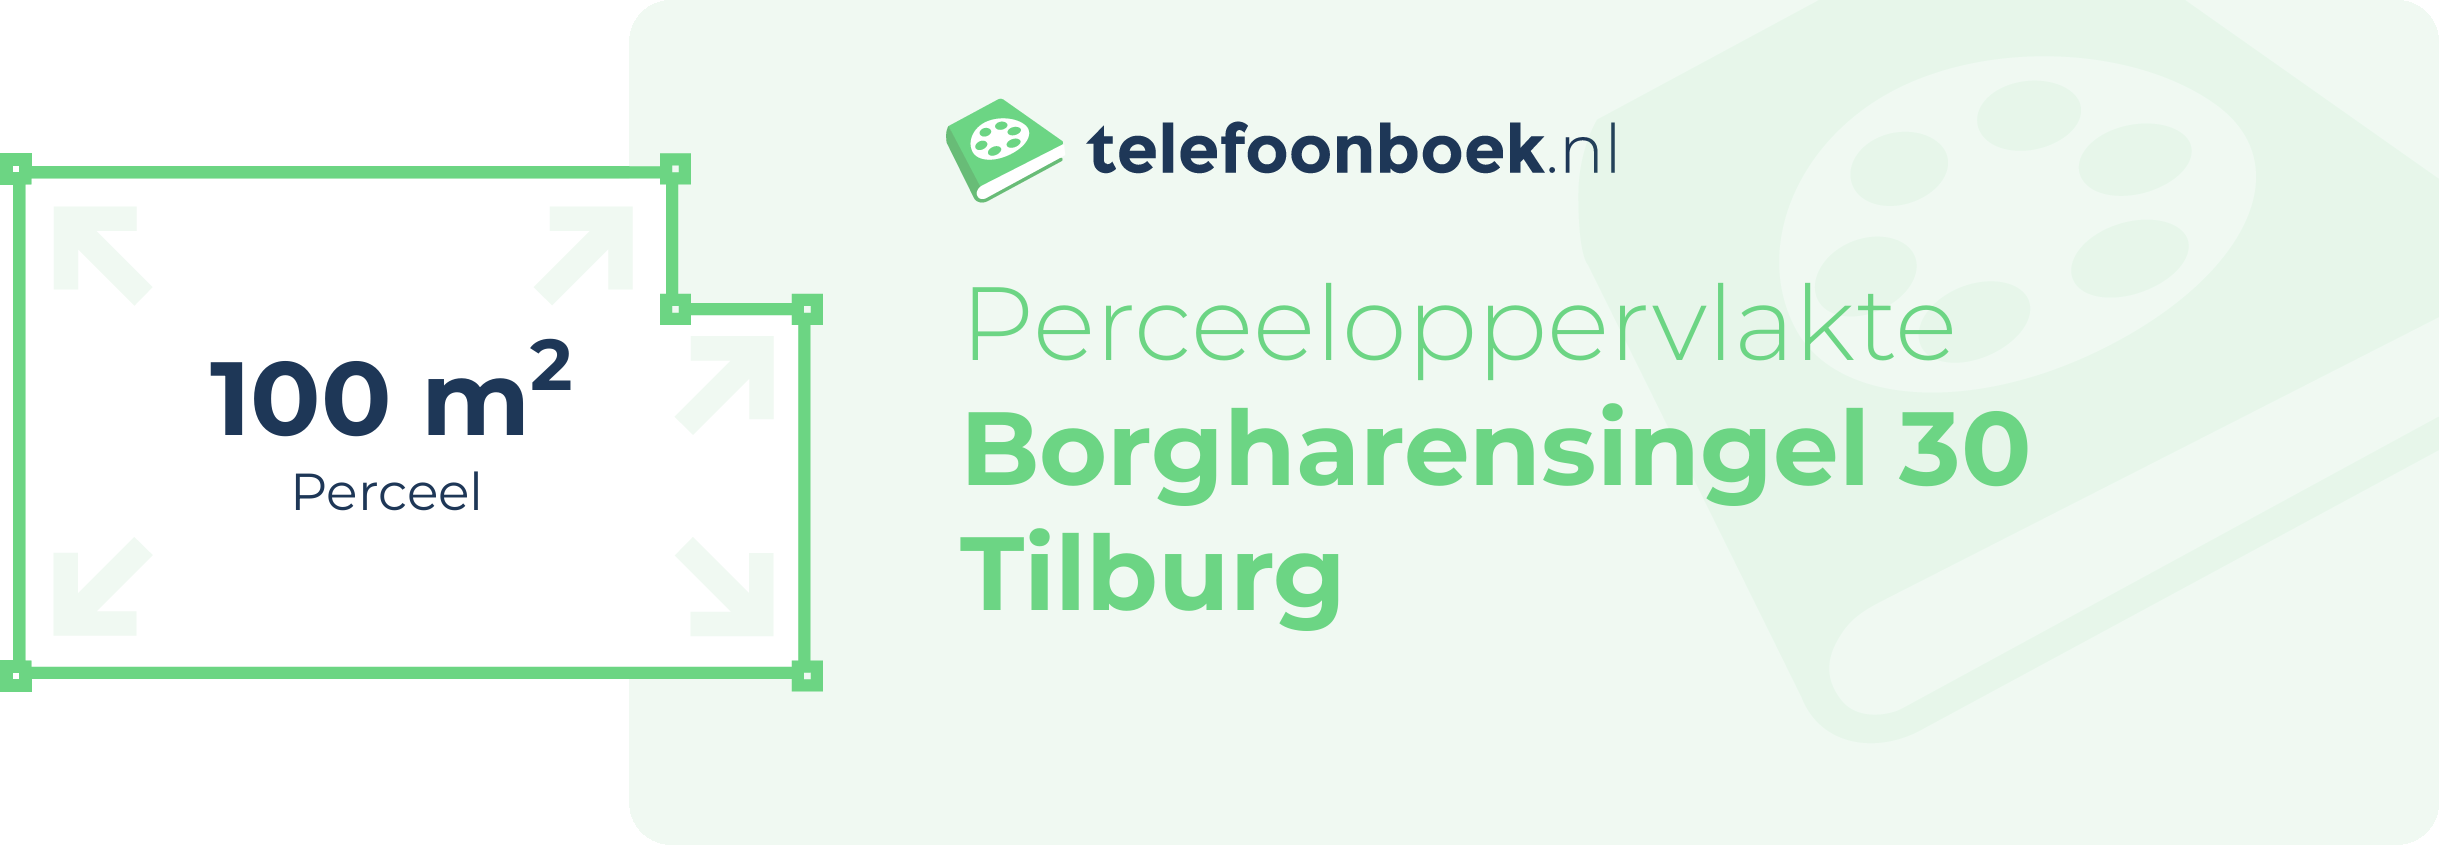 Perceeloppervlakte Borgharensingel 30 Tilburg